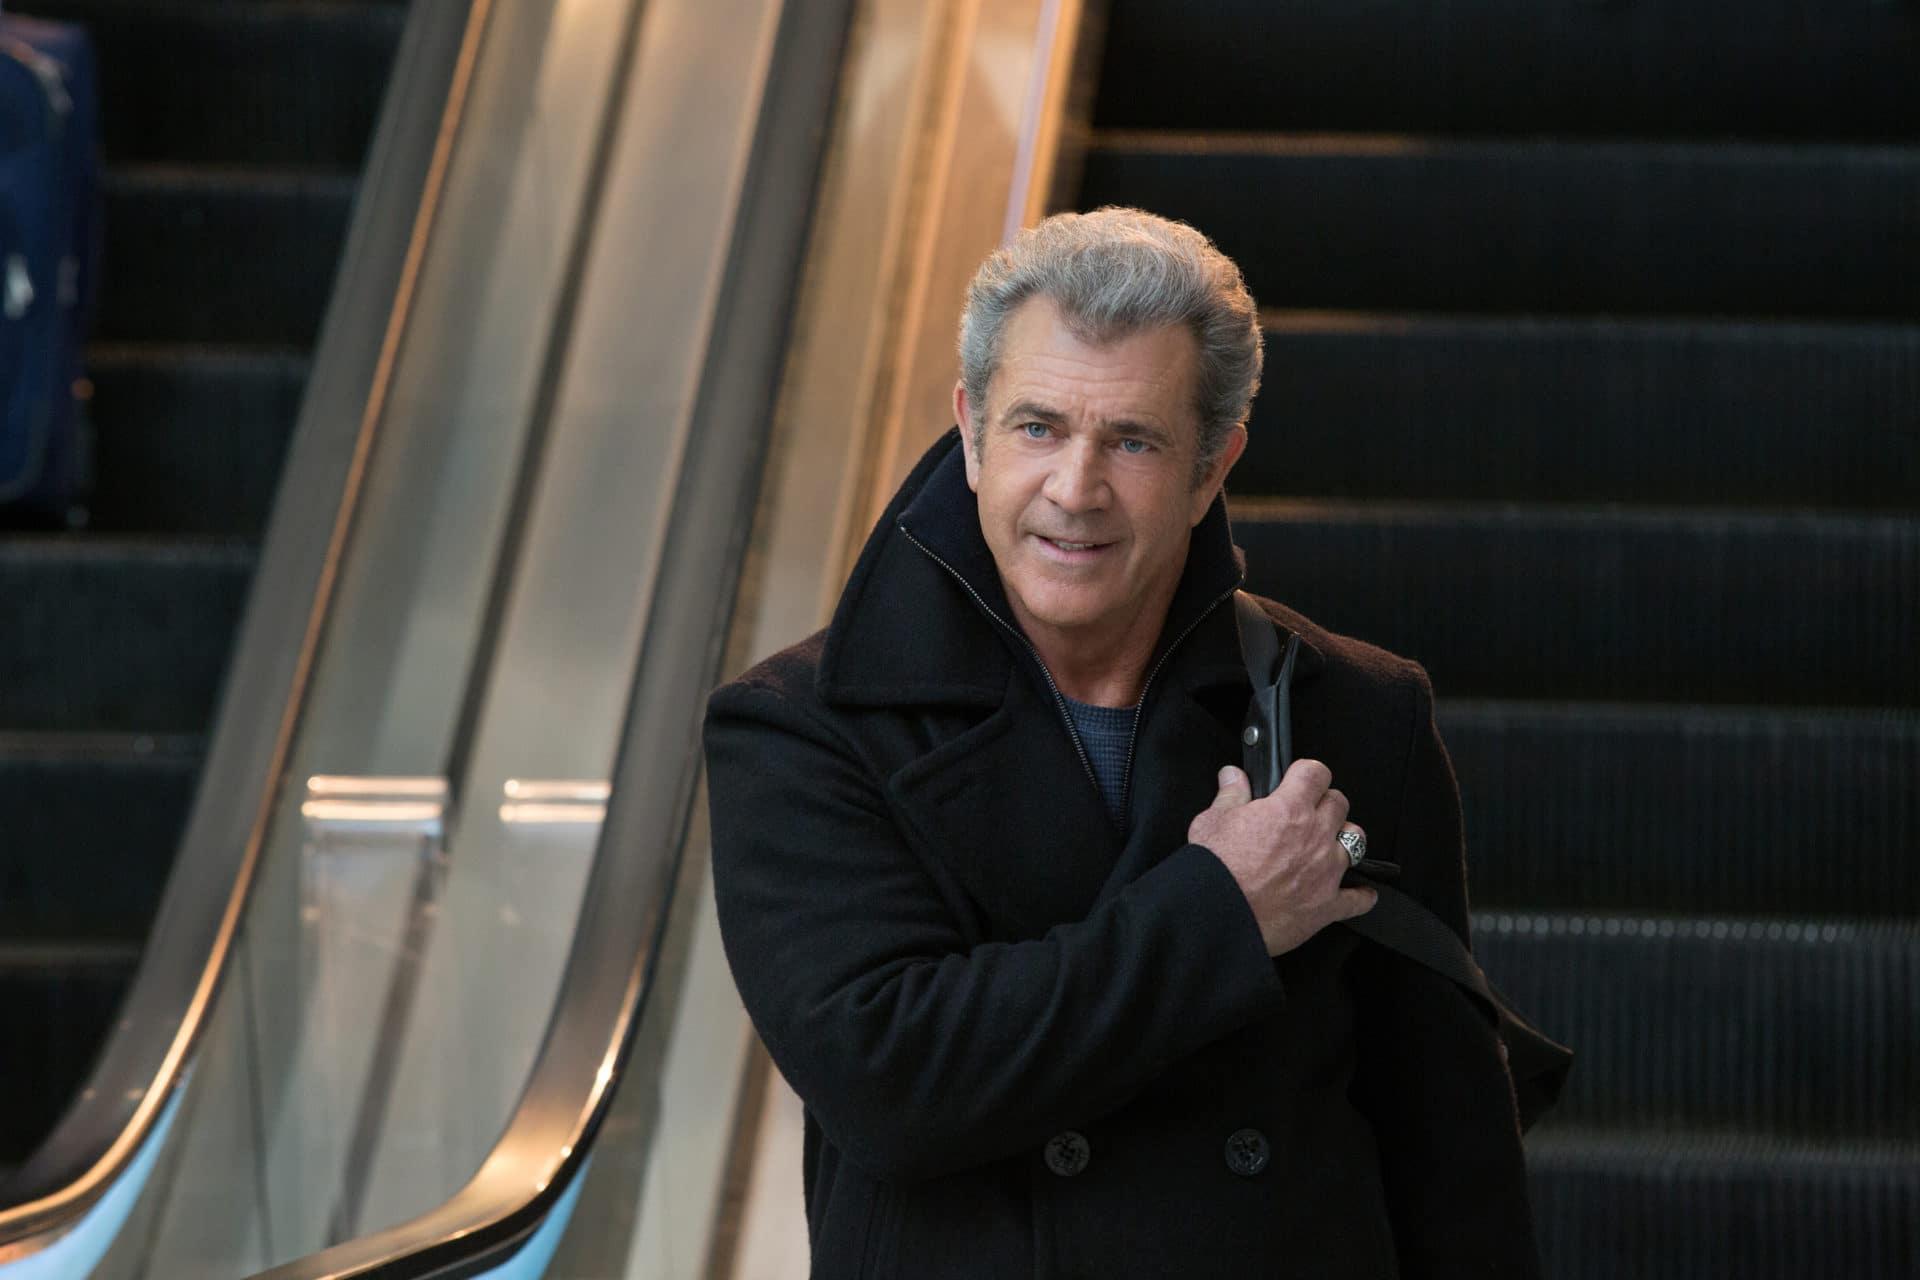 Pai em Dose Dupla 2 | Mel Gibson entra em uma furada em novo trecho do filme